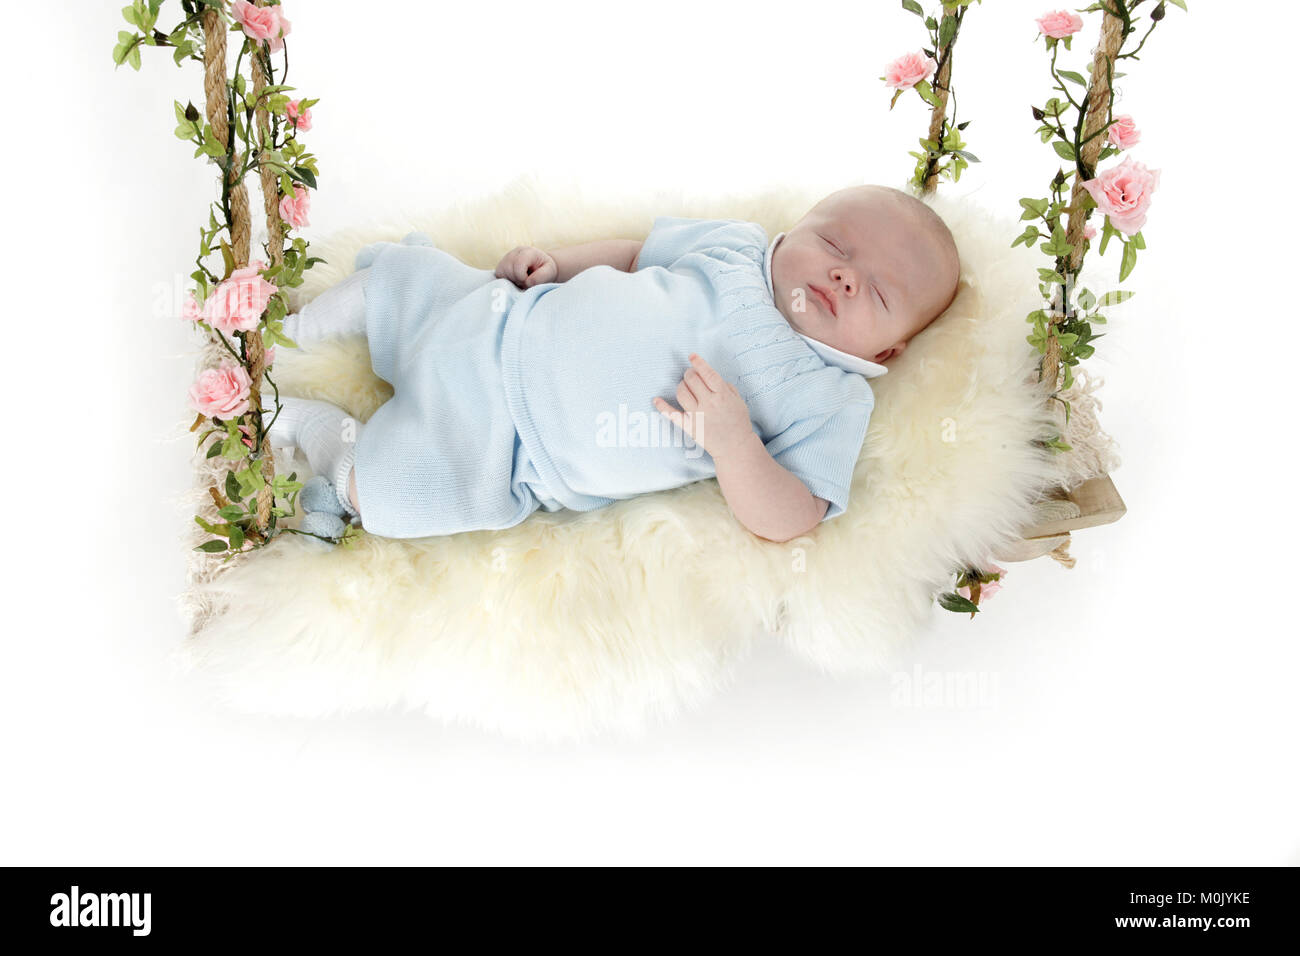 Bebé De 2 Meses Imágenes recortadas de stock - Alamy